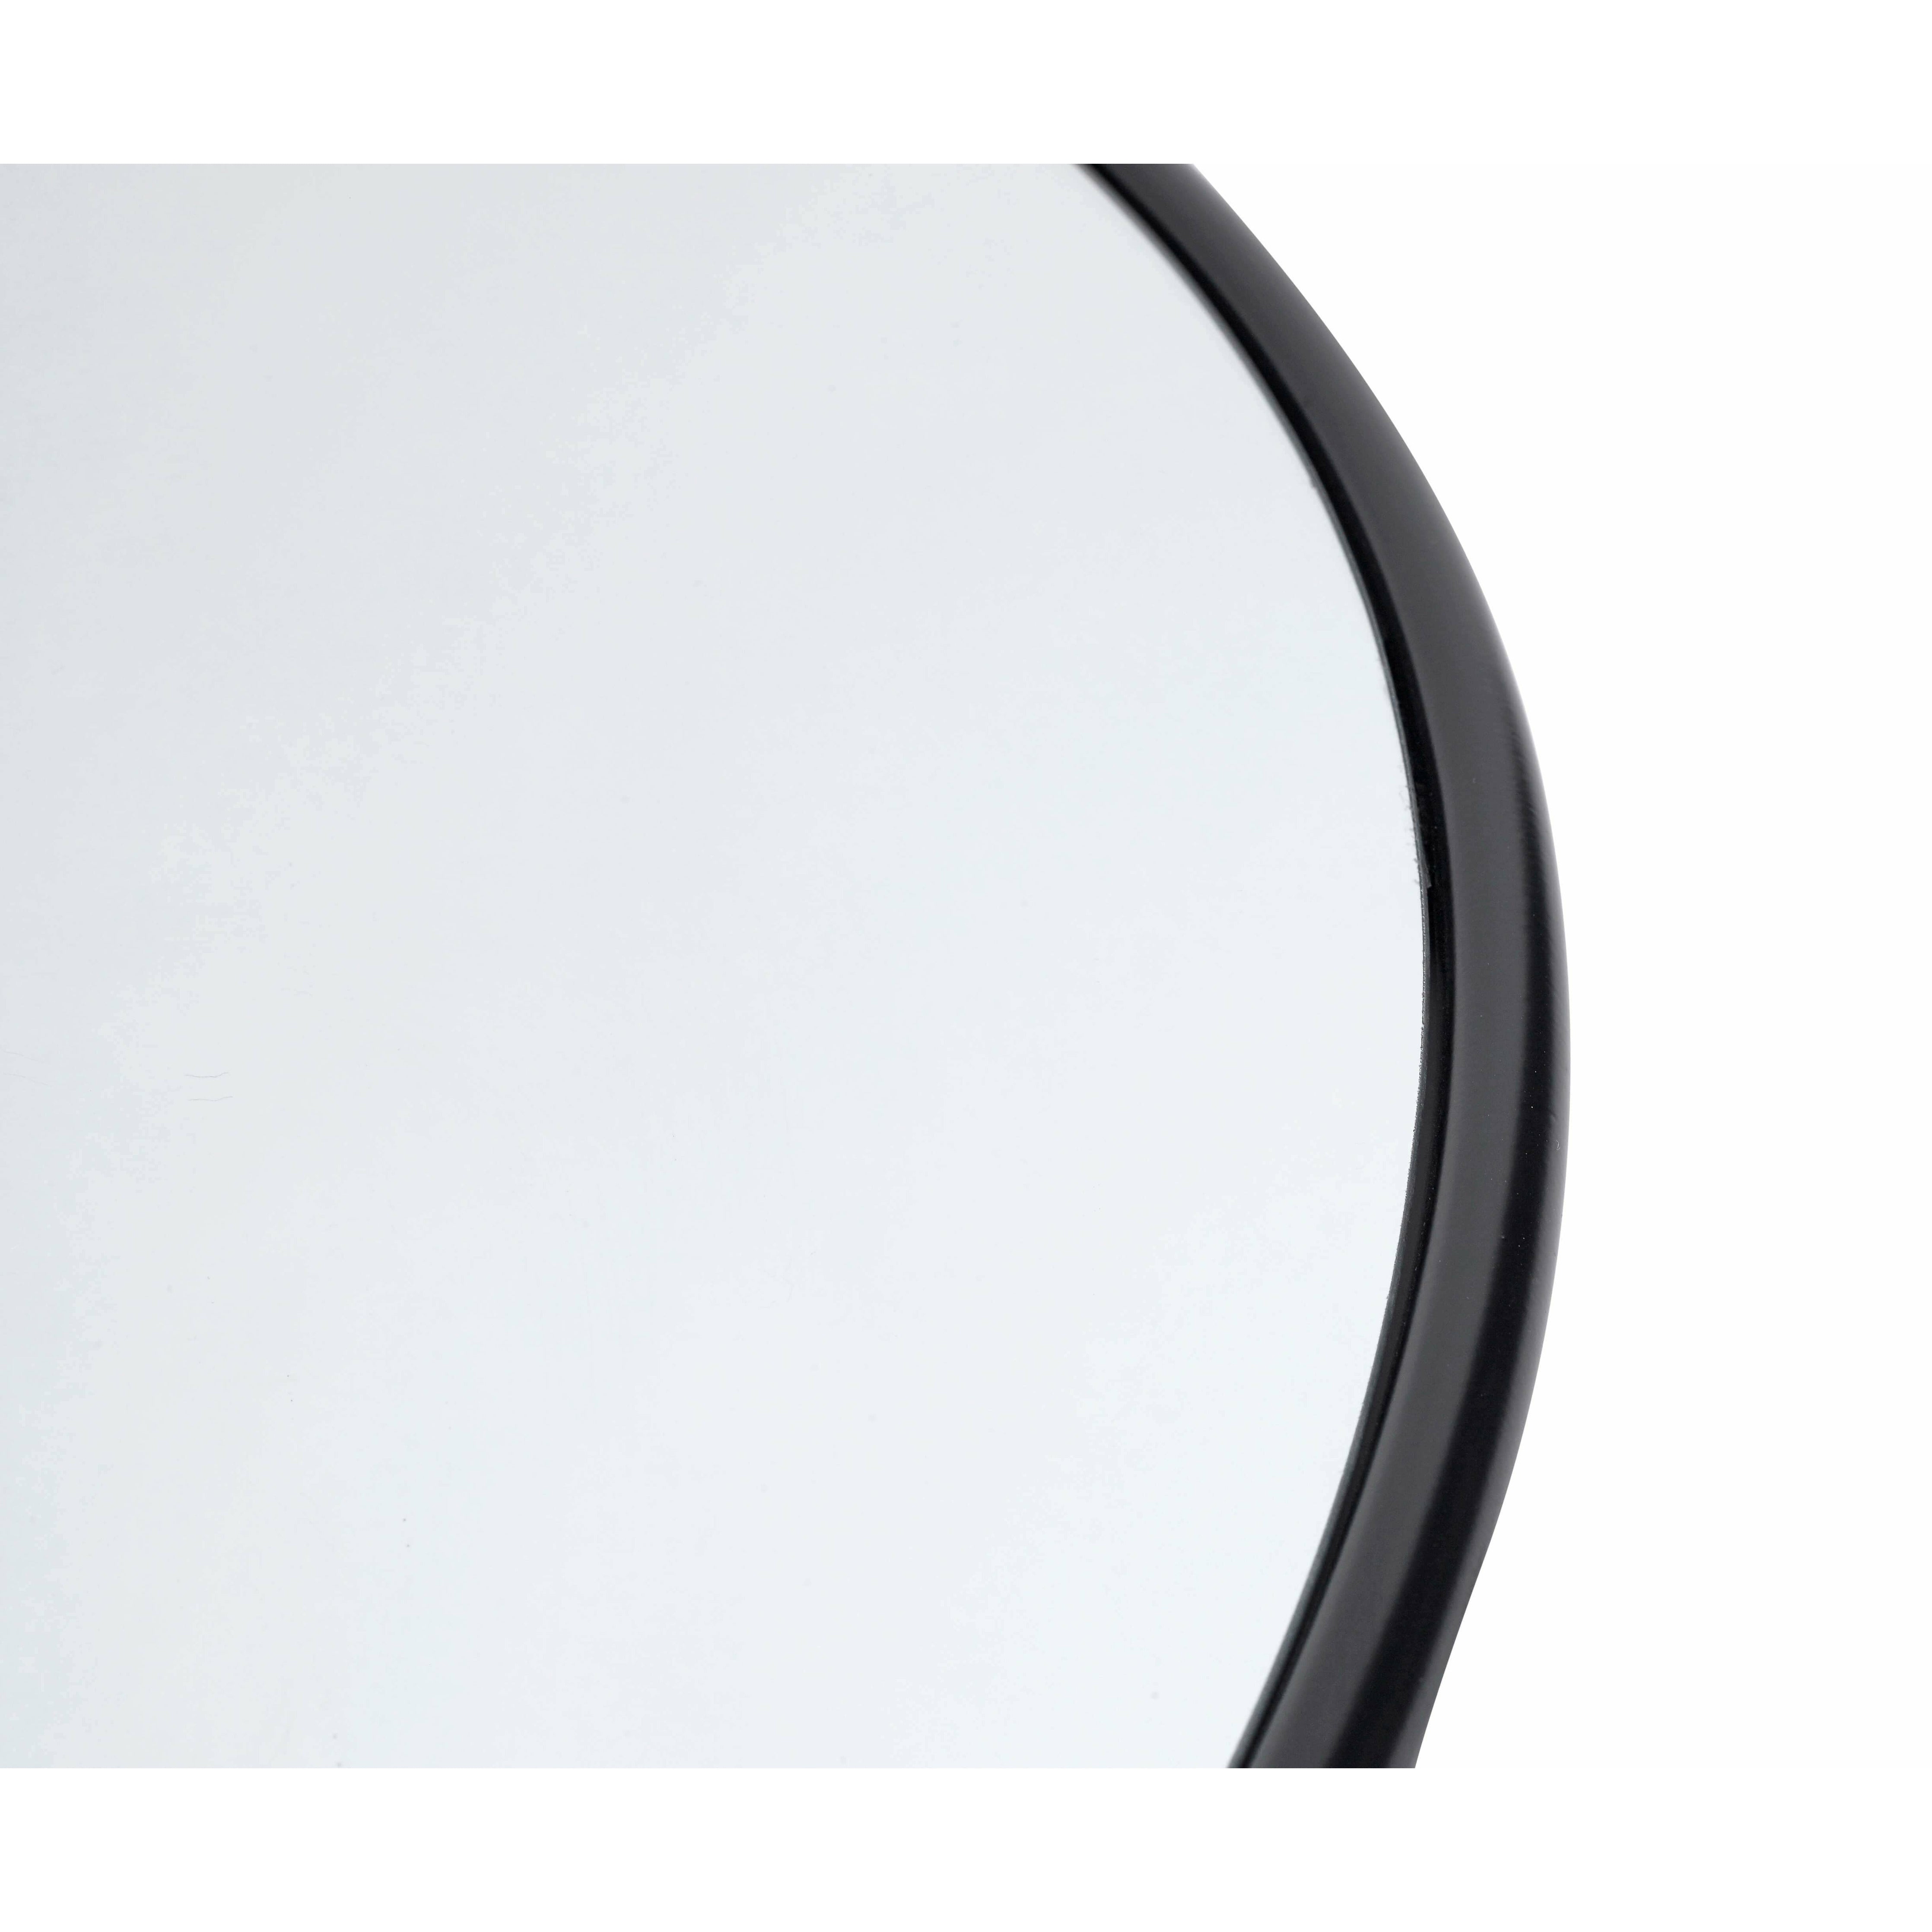 Muubs Copenhague miroir rond noir, 110 cm